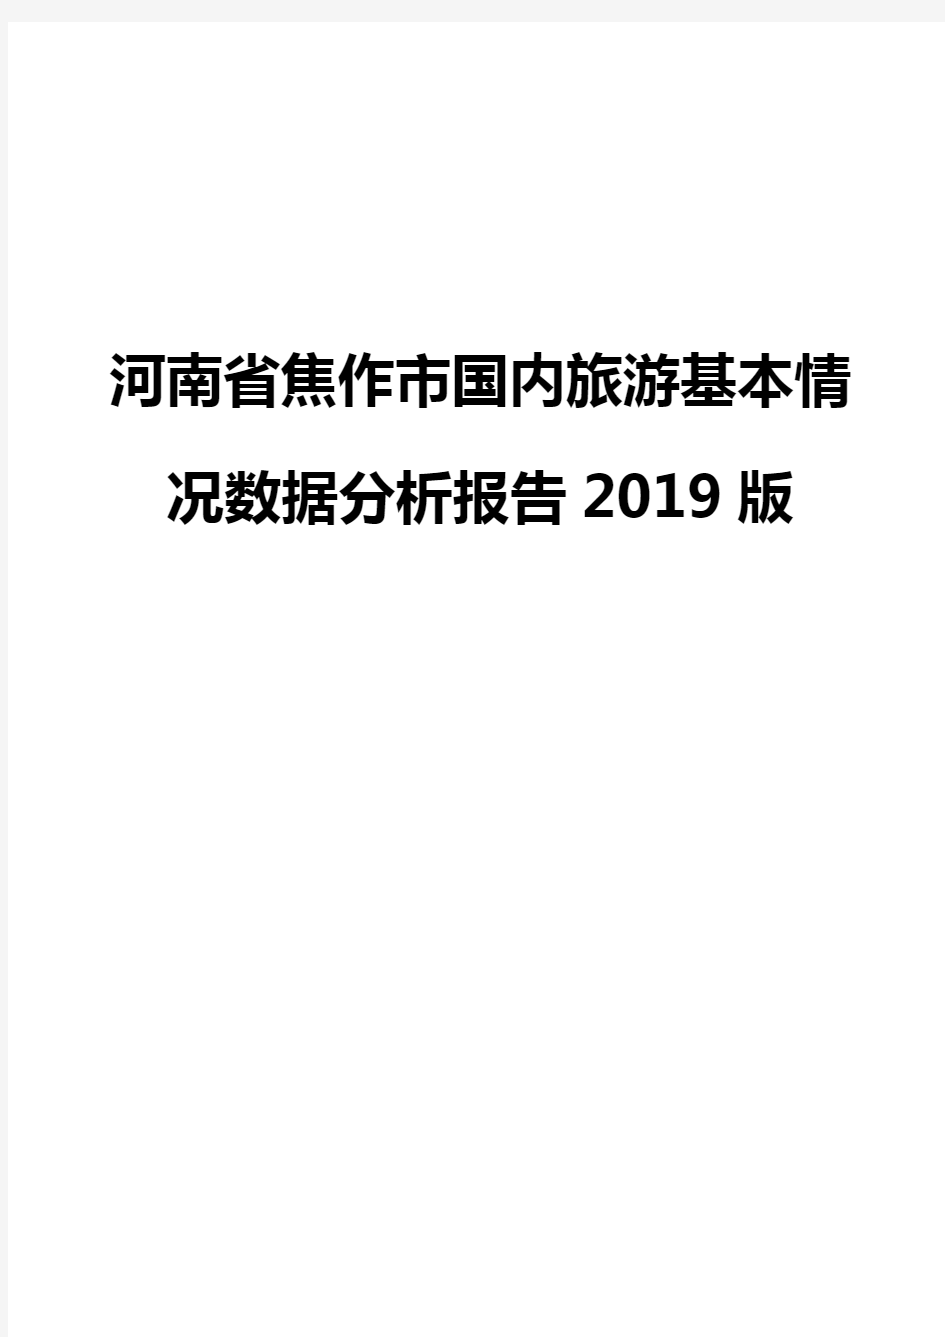 河南省焦作市国内旅游基本情况数据分析报告2019版